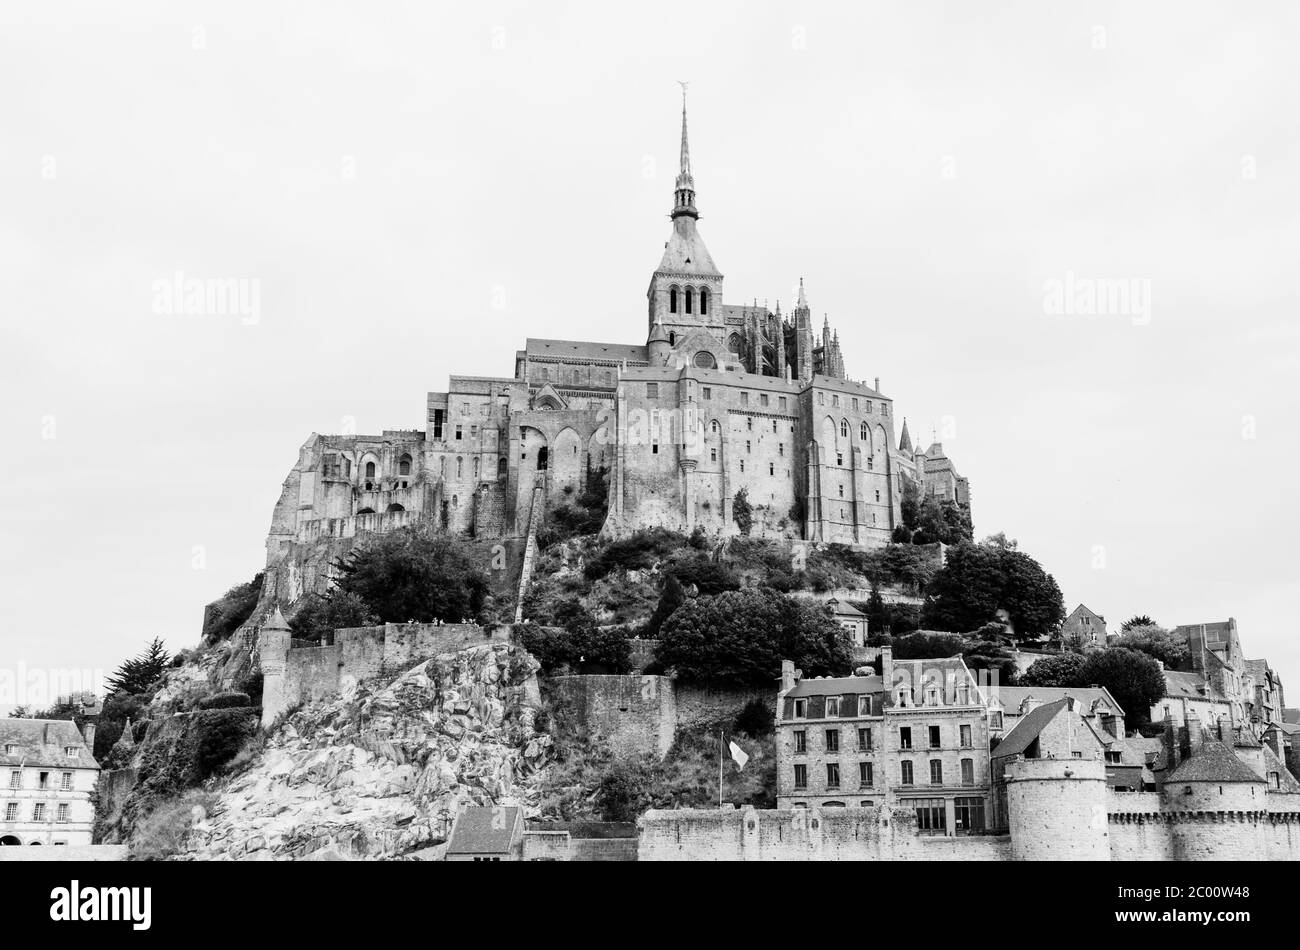 Abbazia medievale monumentale di Mont-Saint-Michel in Normandia, Francia. Immagine in bianco e nero Foto Stock